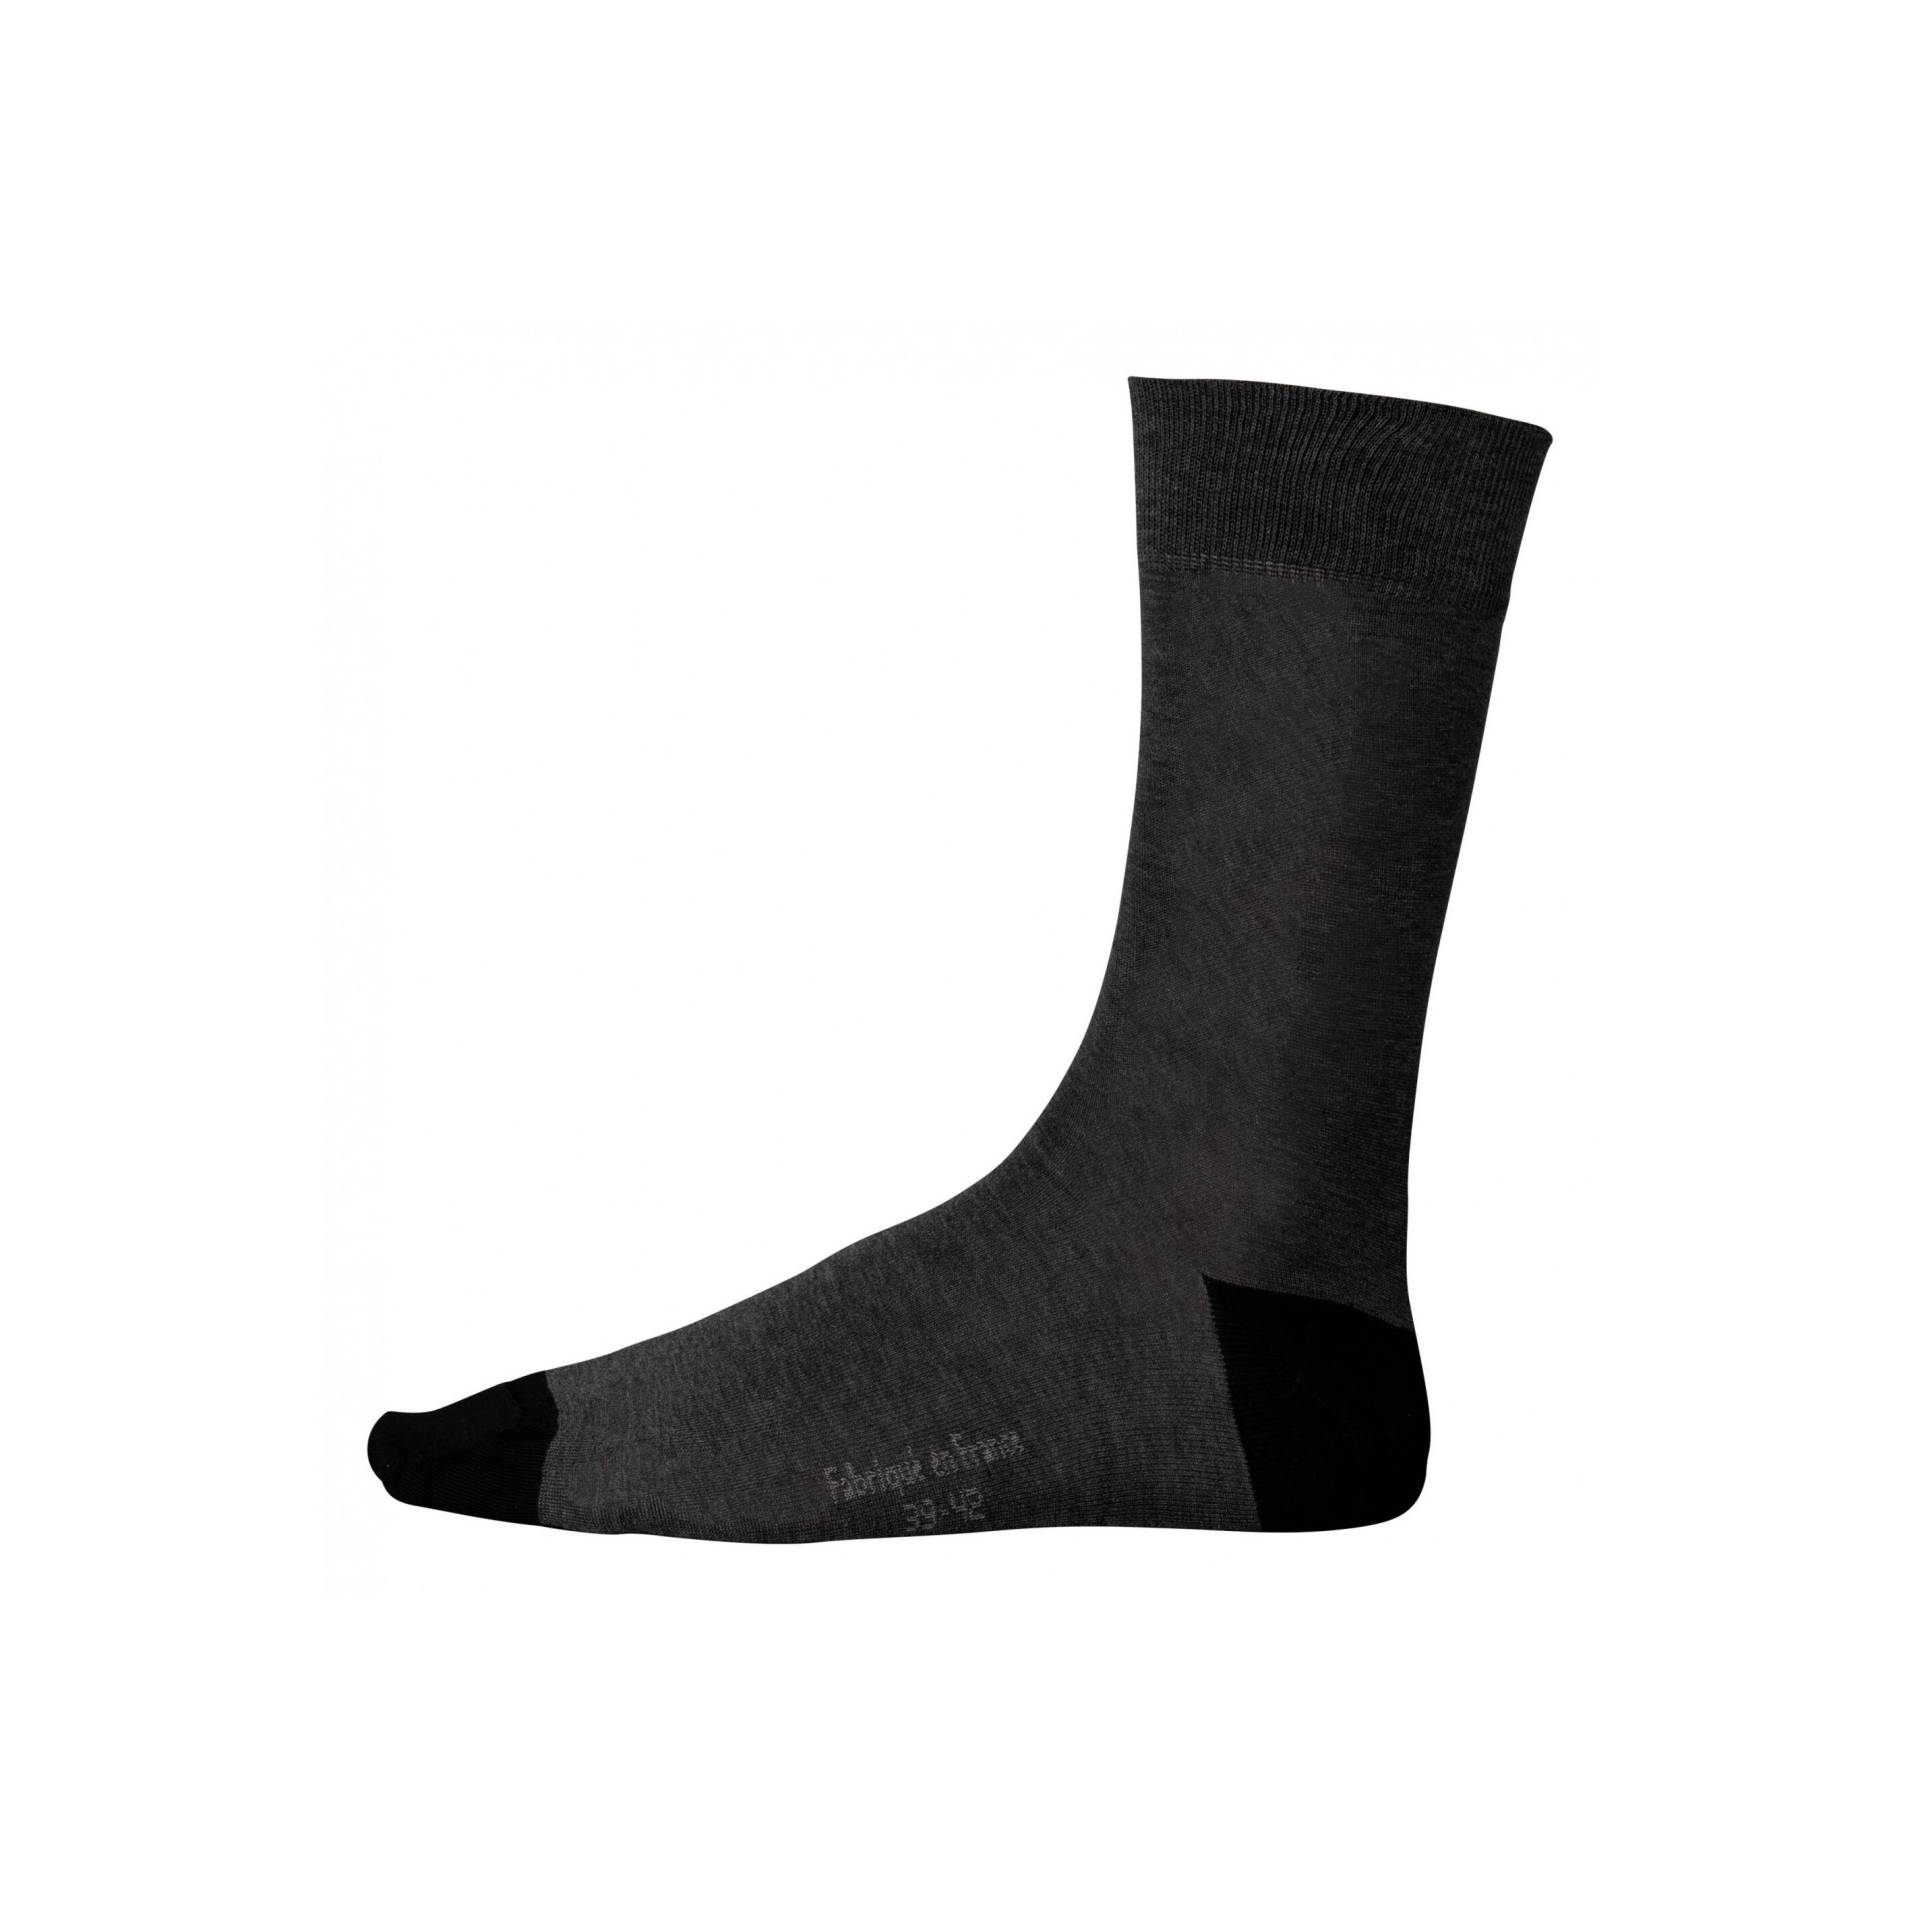 Halbhohe Socken Aus Mercerisierter Baumwolle Origine France Garantie Herren  35-38 von Kariban